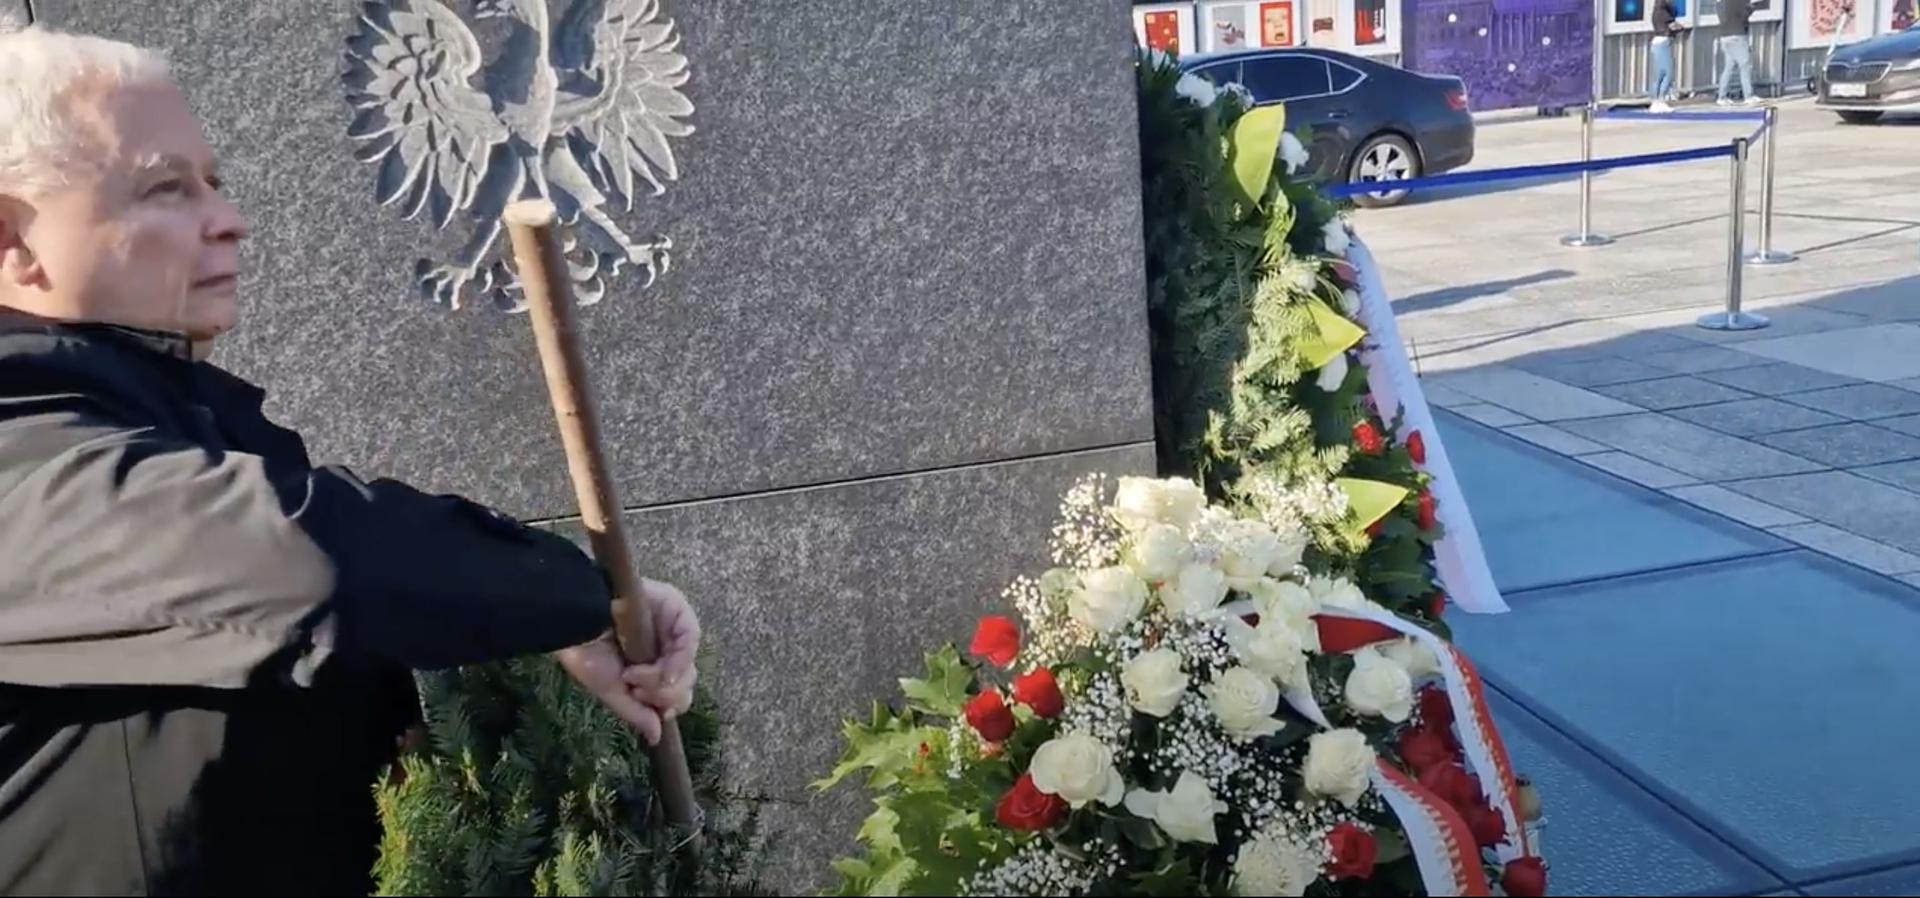 Kaczyński zniszczył wieniec przed kamerami. Prokuratura umarza sprawę